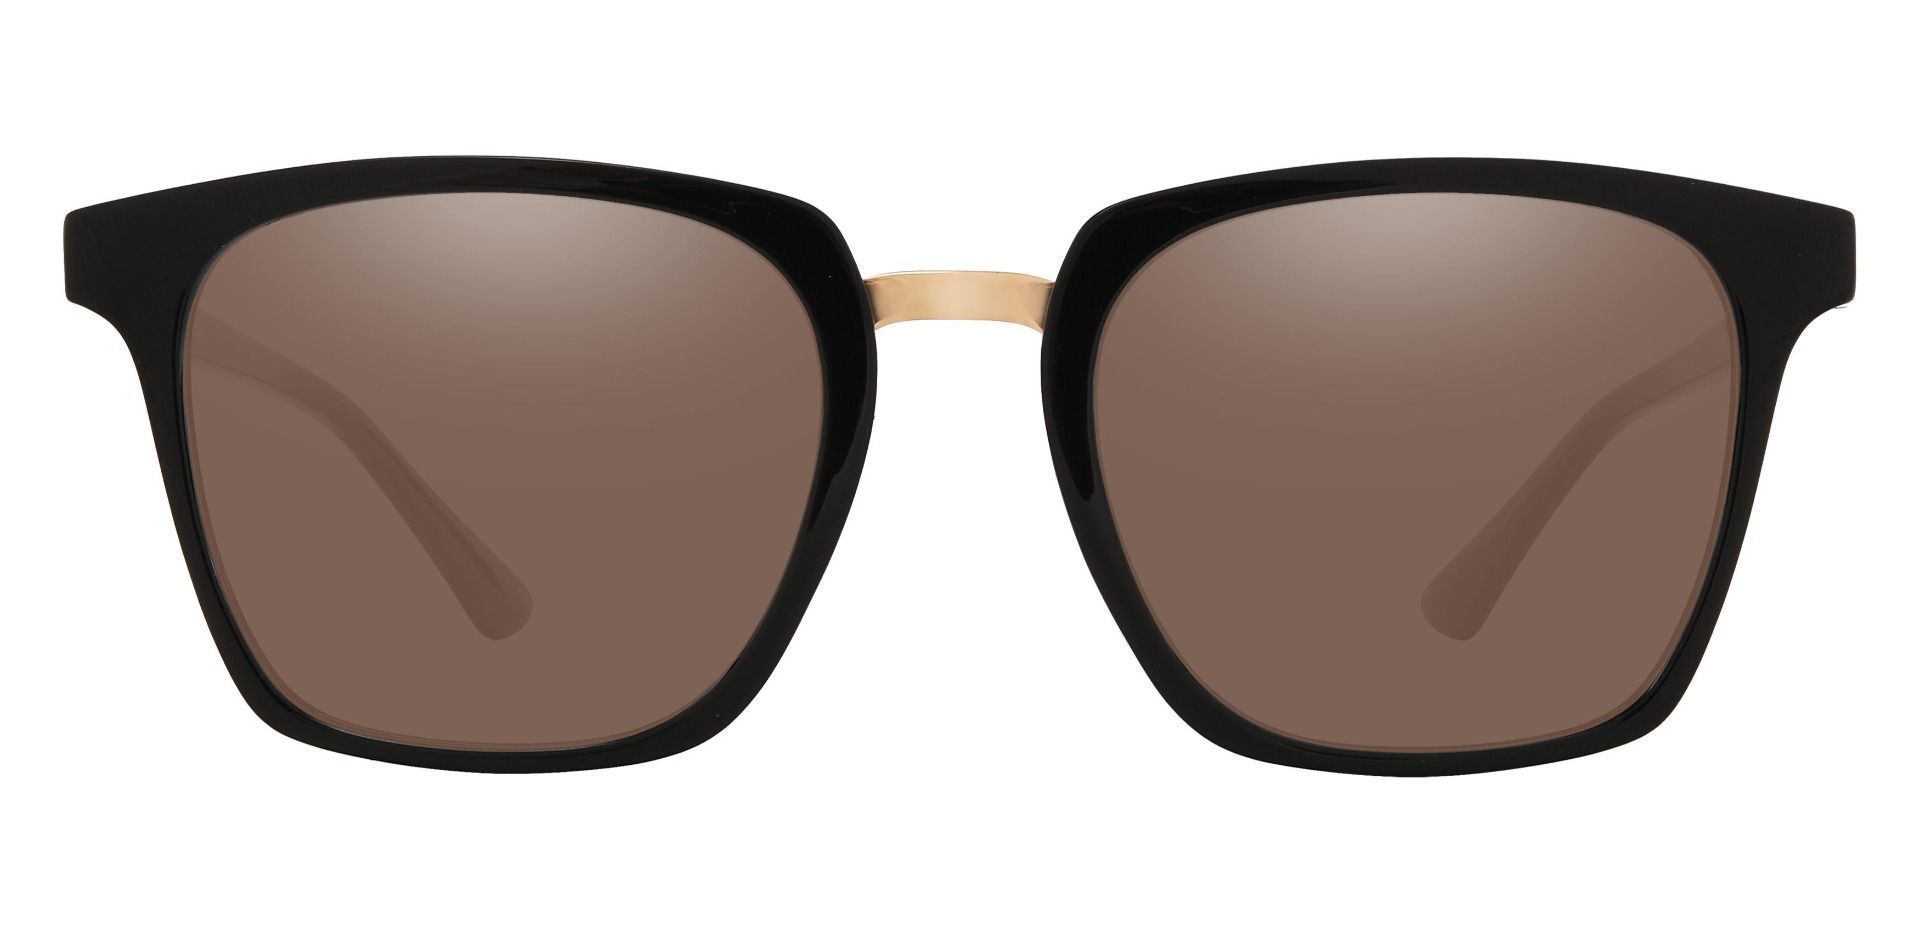 Delta Square Progressive Sunglasses - Black Frame With Brown Lenses